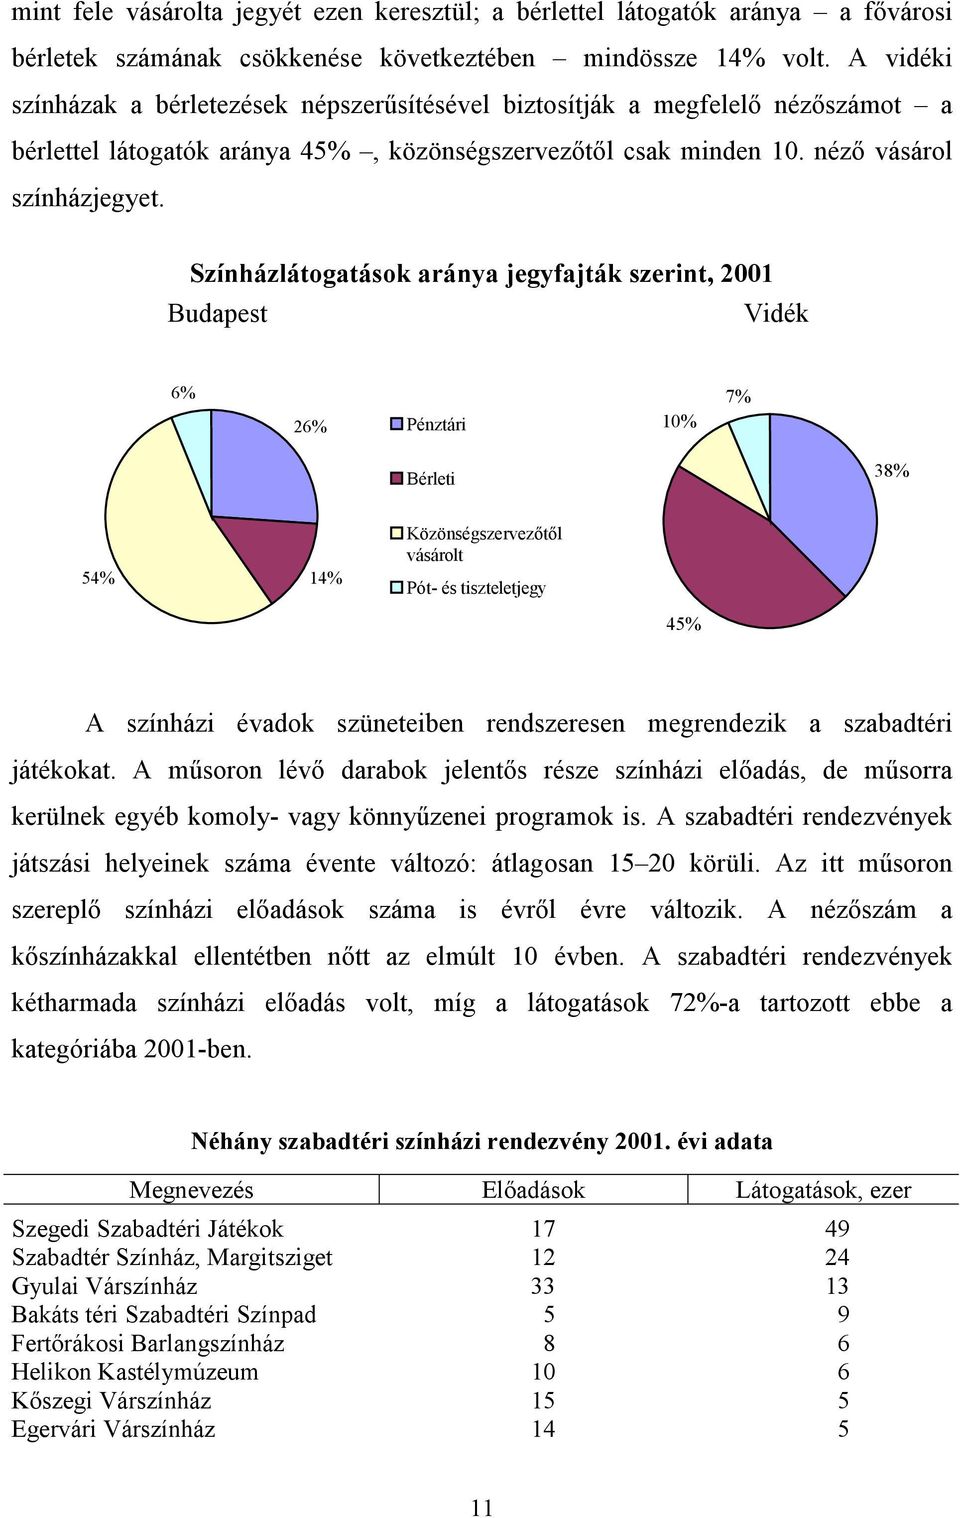 Színházlátogatások aránya jegyfajták szerint, 2001 Budapest Vidék 6% 26% Pénztári 10% 7% Bérleti 38% 54% 14% Közönségszervezőtől vásárolt Pót- és tiszteletjegy 45% A színházi évadok szüneteiben